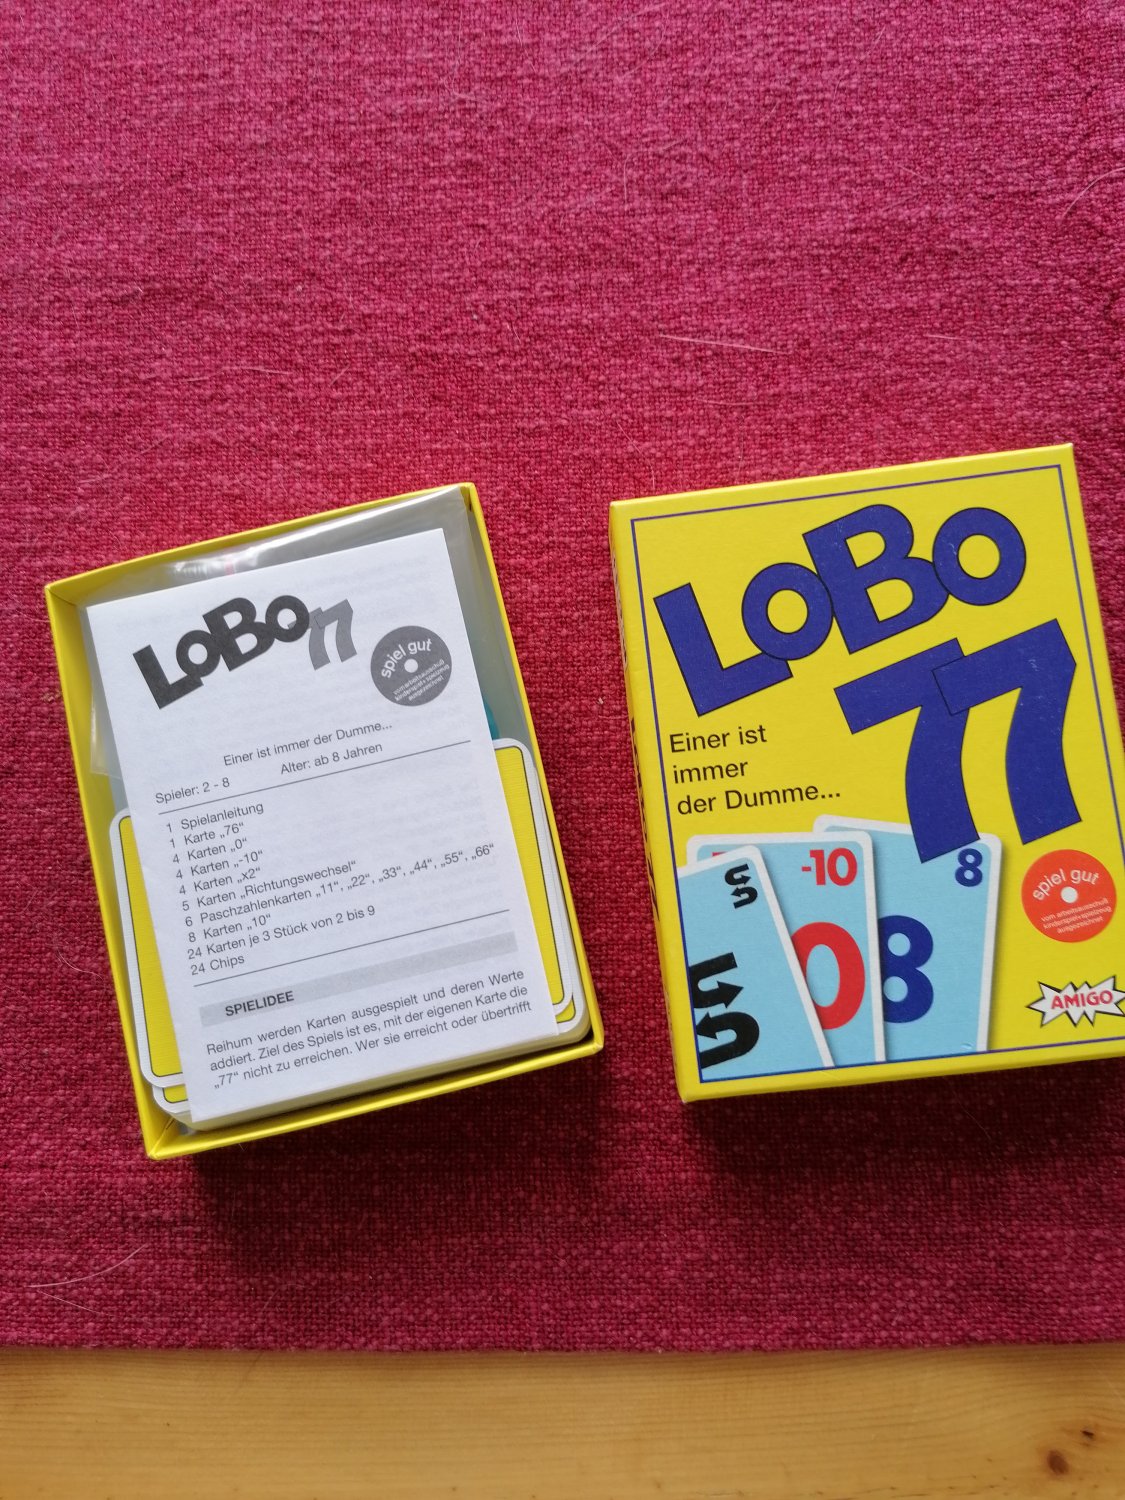 Lobo 77 Einer ist immer der Dumme“ (Thomas Pauli) – Spiel antiquarisch  kaufen – A02AuDBv41ZZS